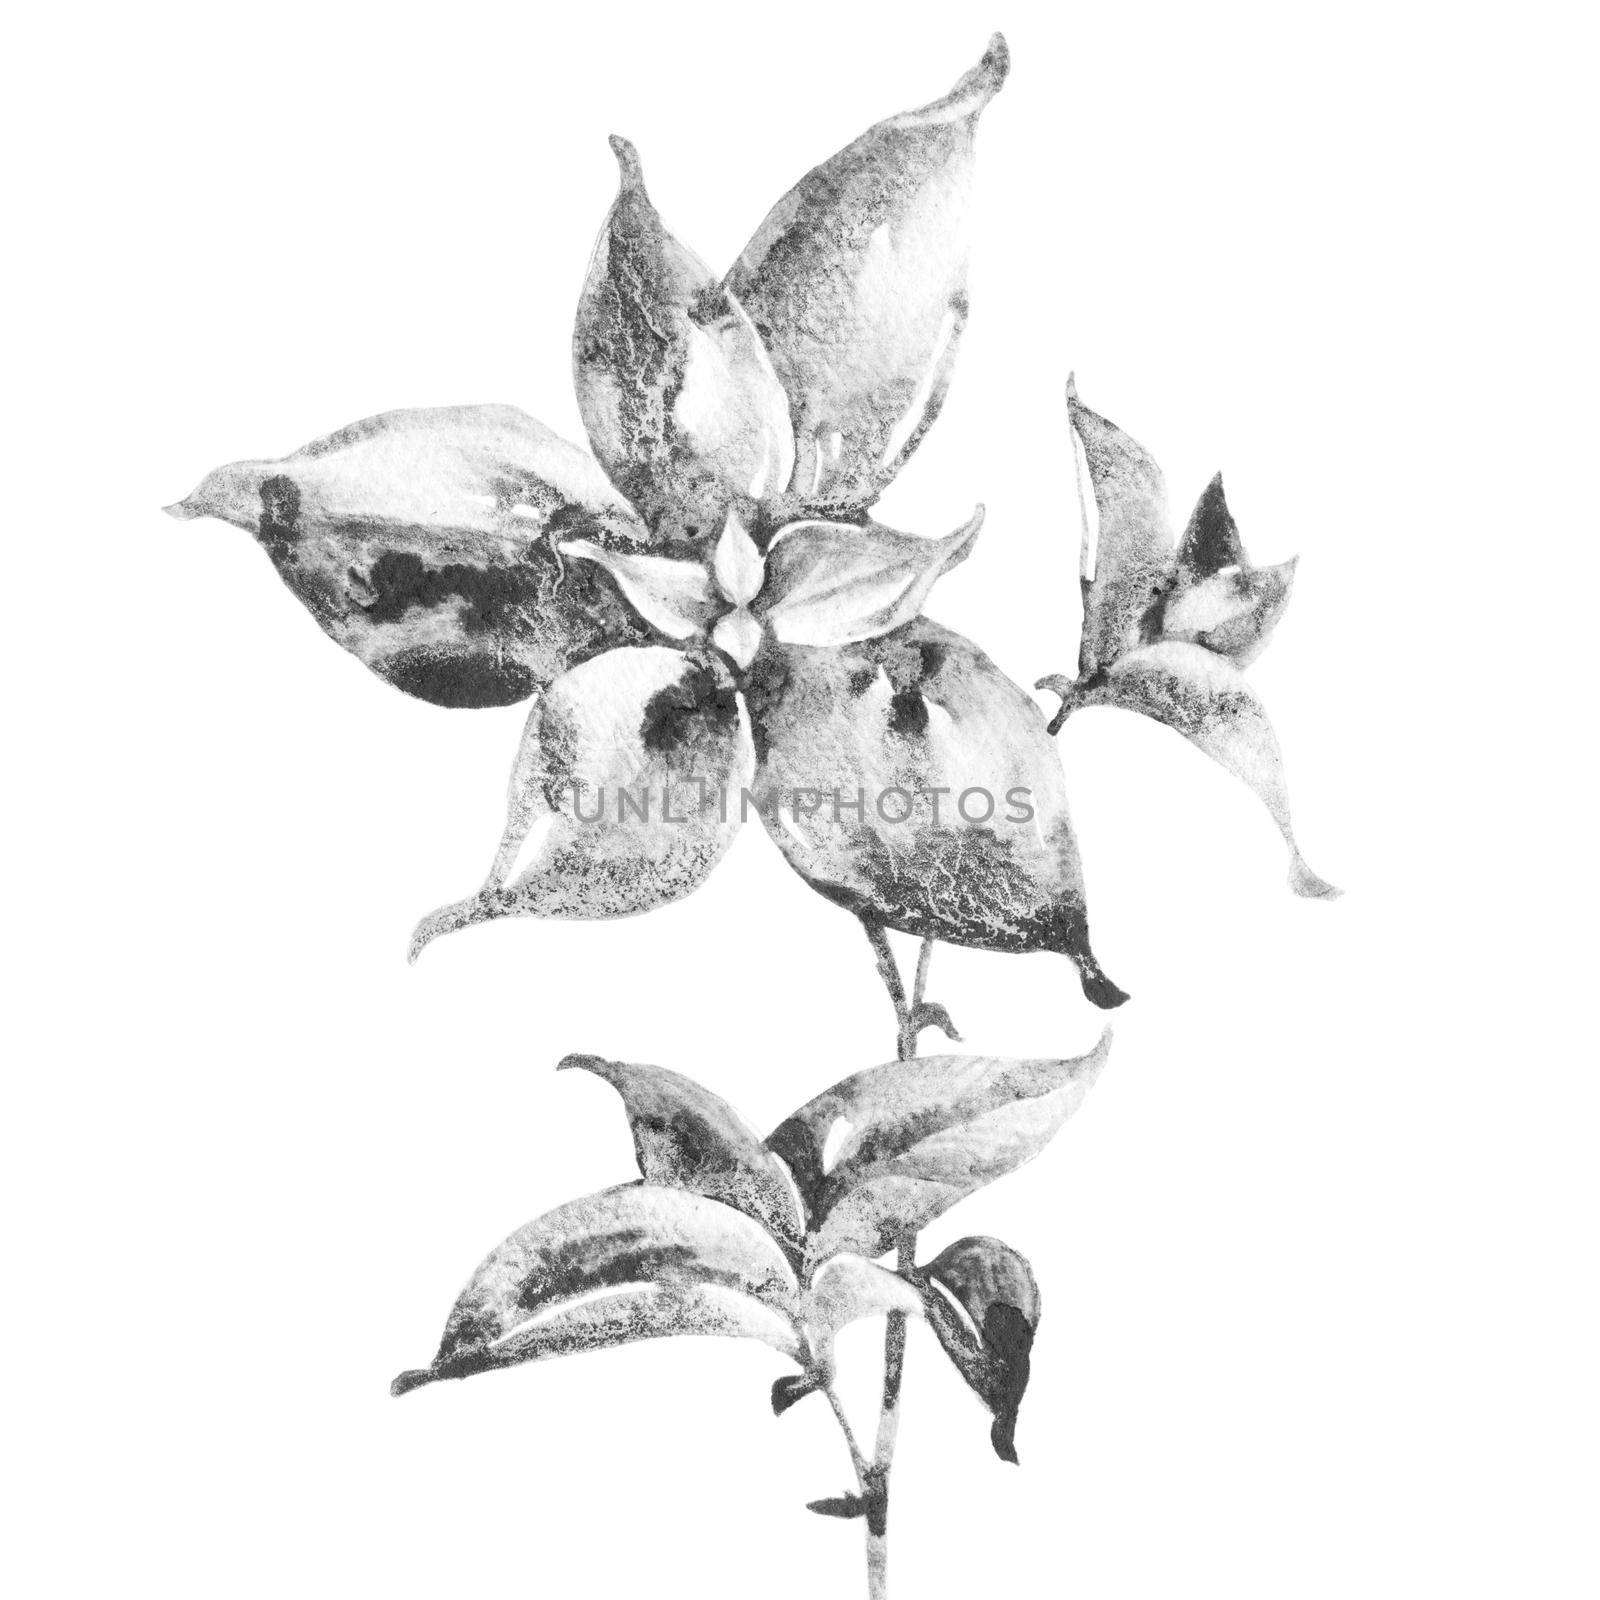 Artistic drawing of plant by Olatarakanova